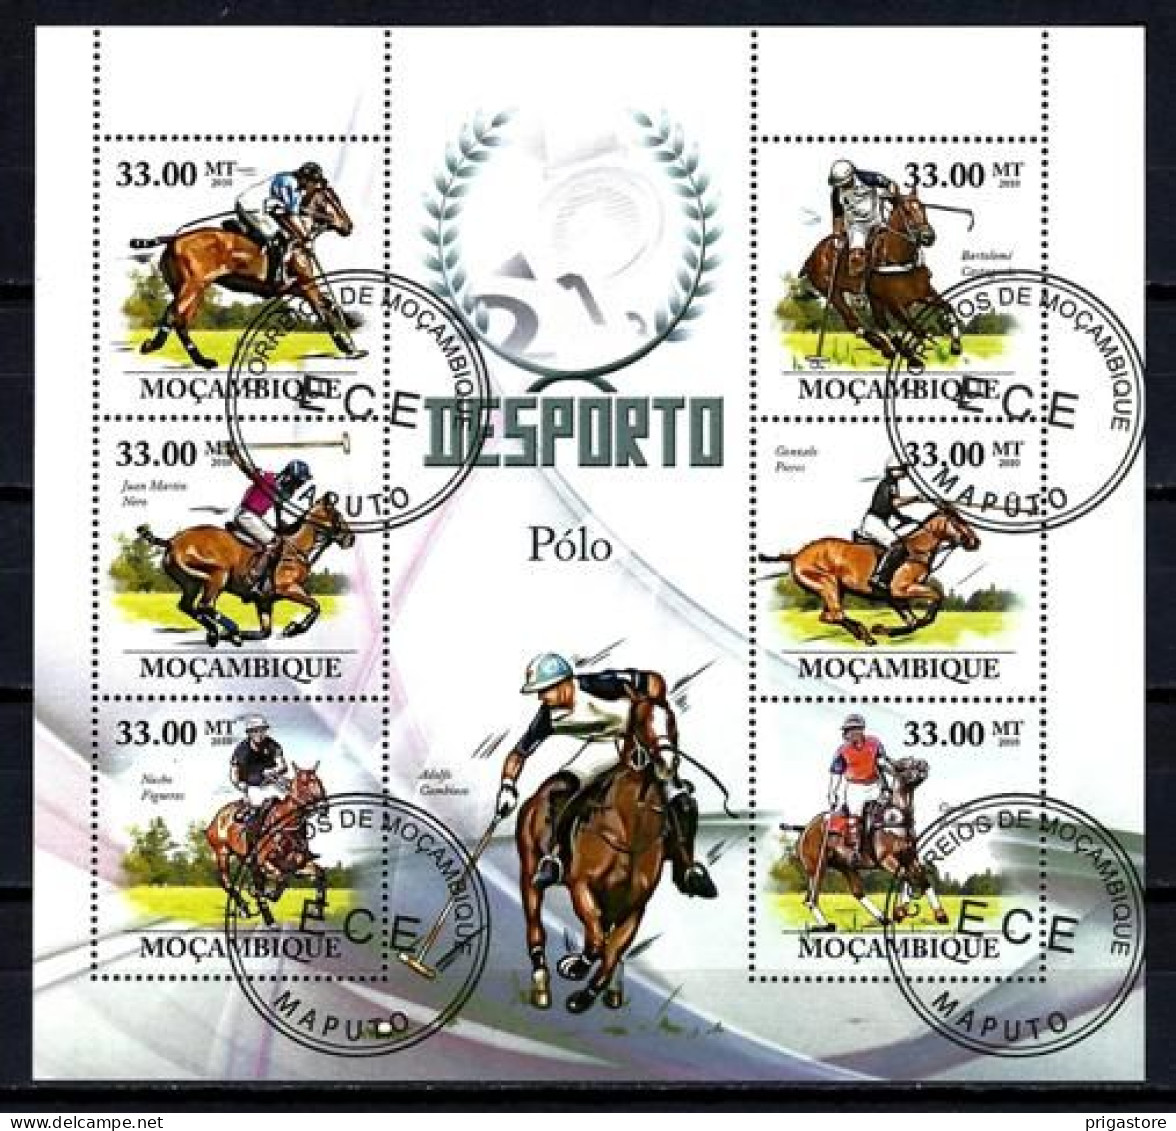 Chevaux Mozambique 2010 (47) Yvert N° 3088 à 3093 Oblitéré Used - Horses